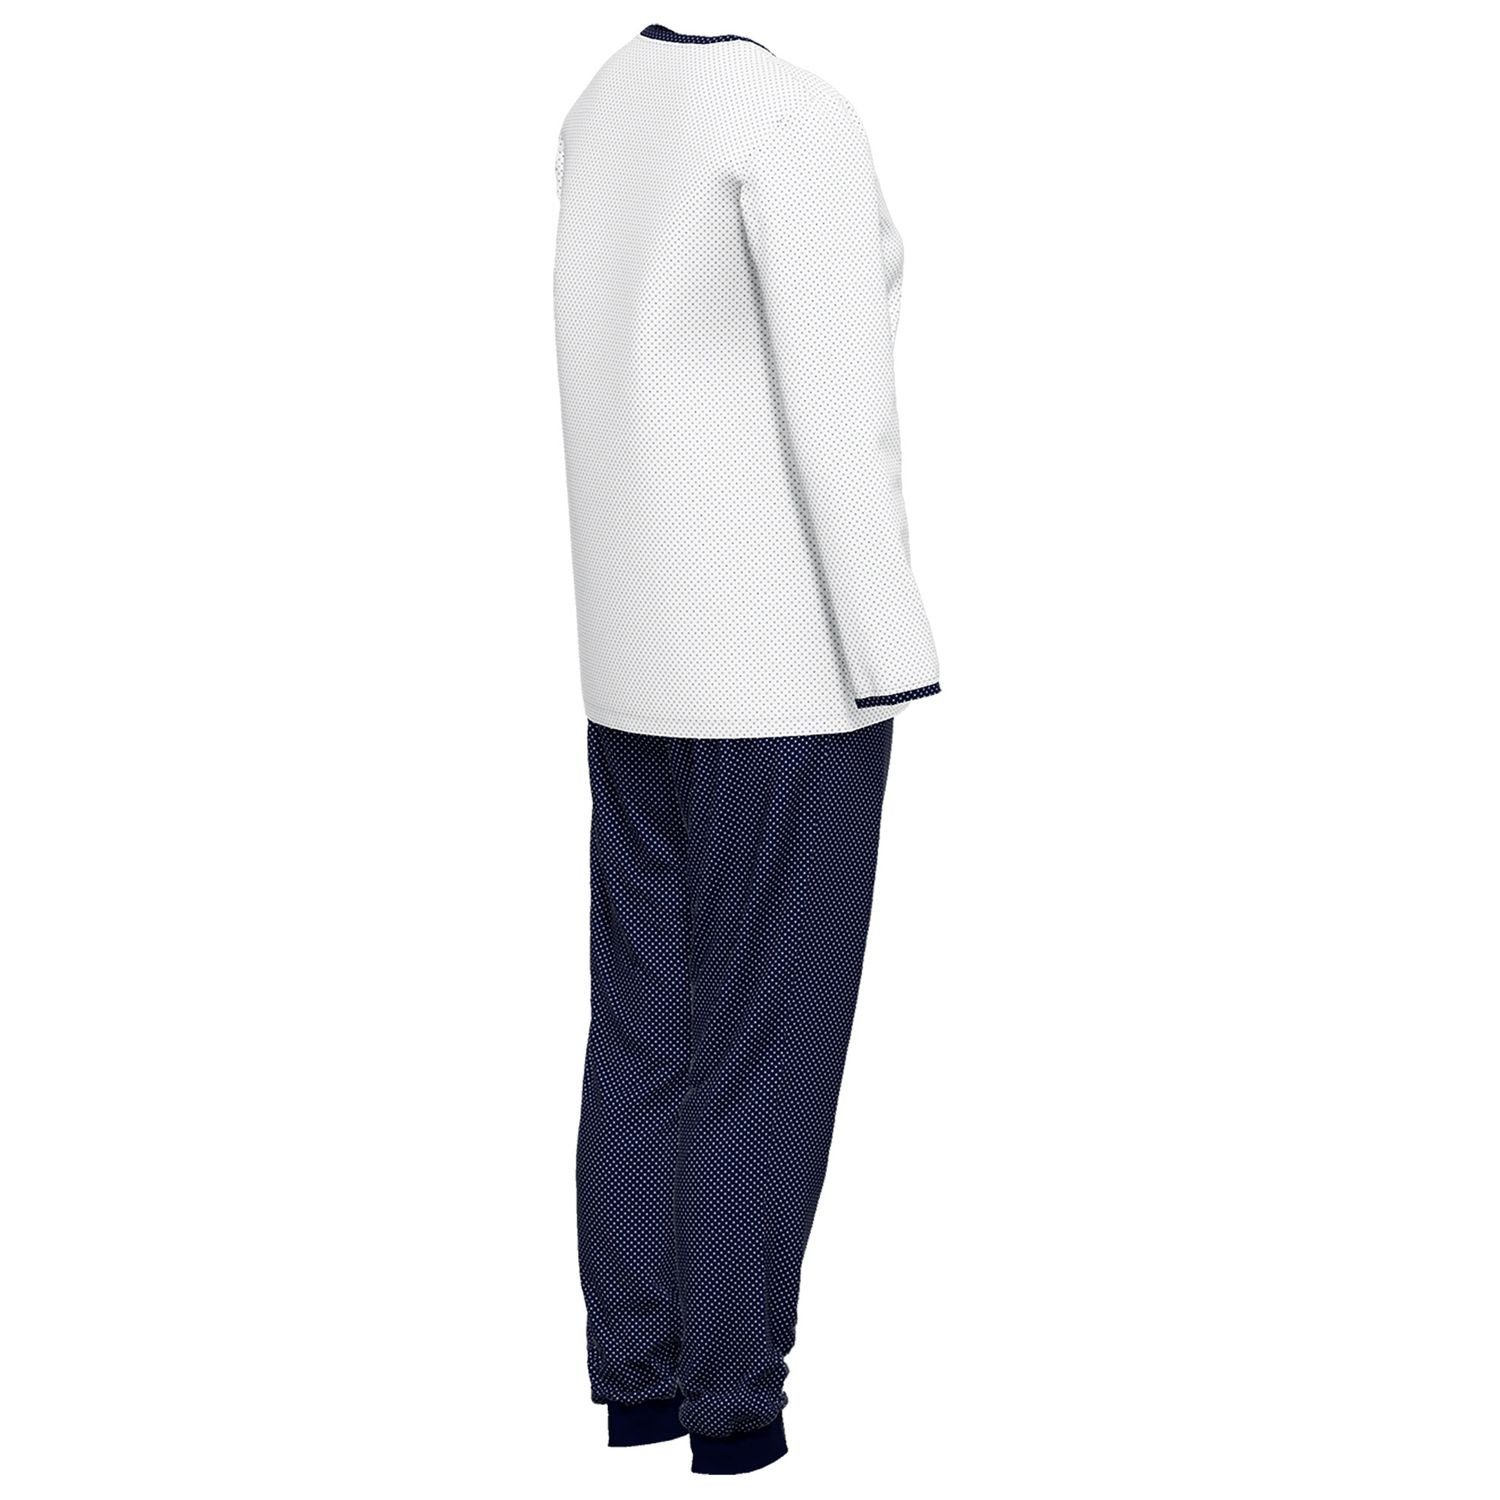 GÖTZBURG Schlafanzug mit Henley-Auschnitt, Knöpfe, / reine gepunktet bequem, weiß Baumolle langarm, navy weich